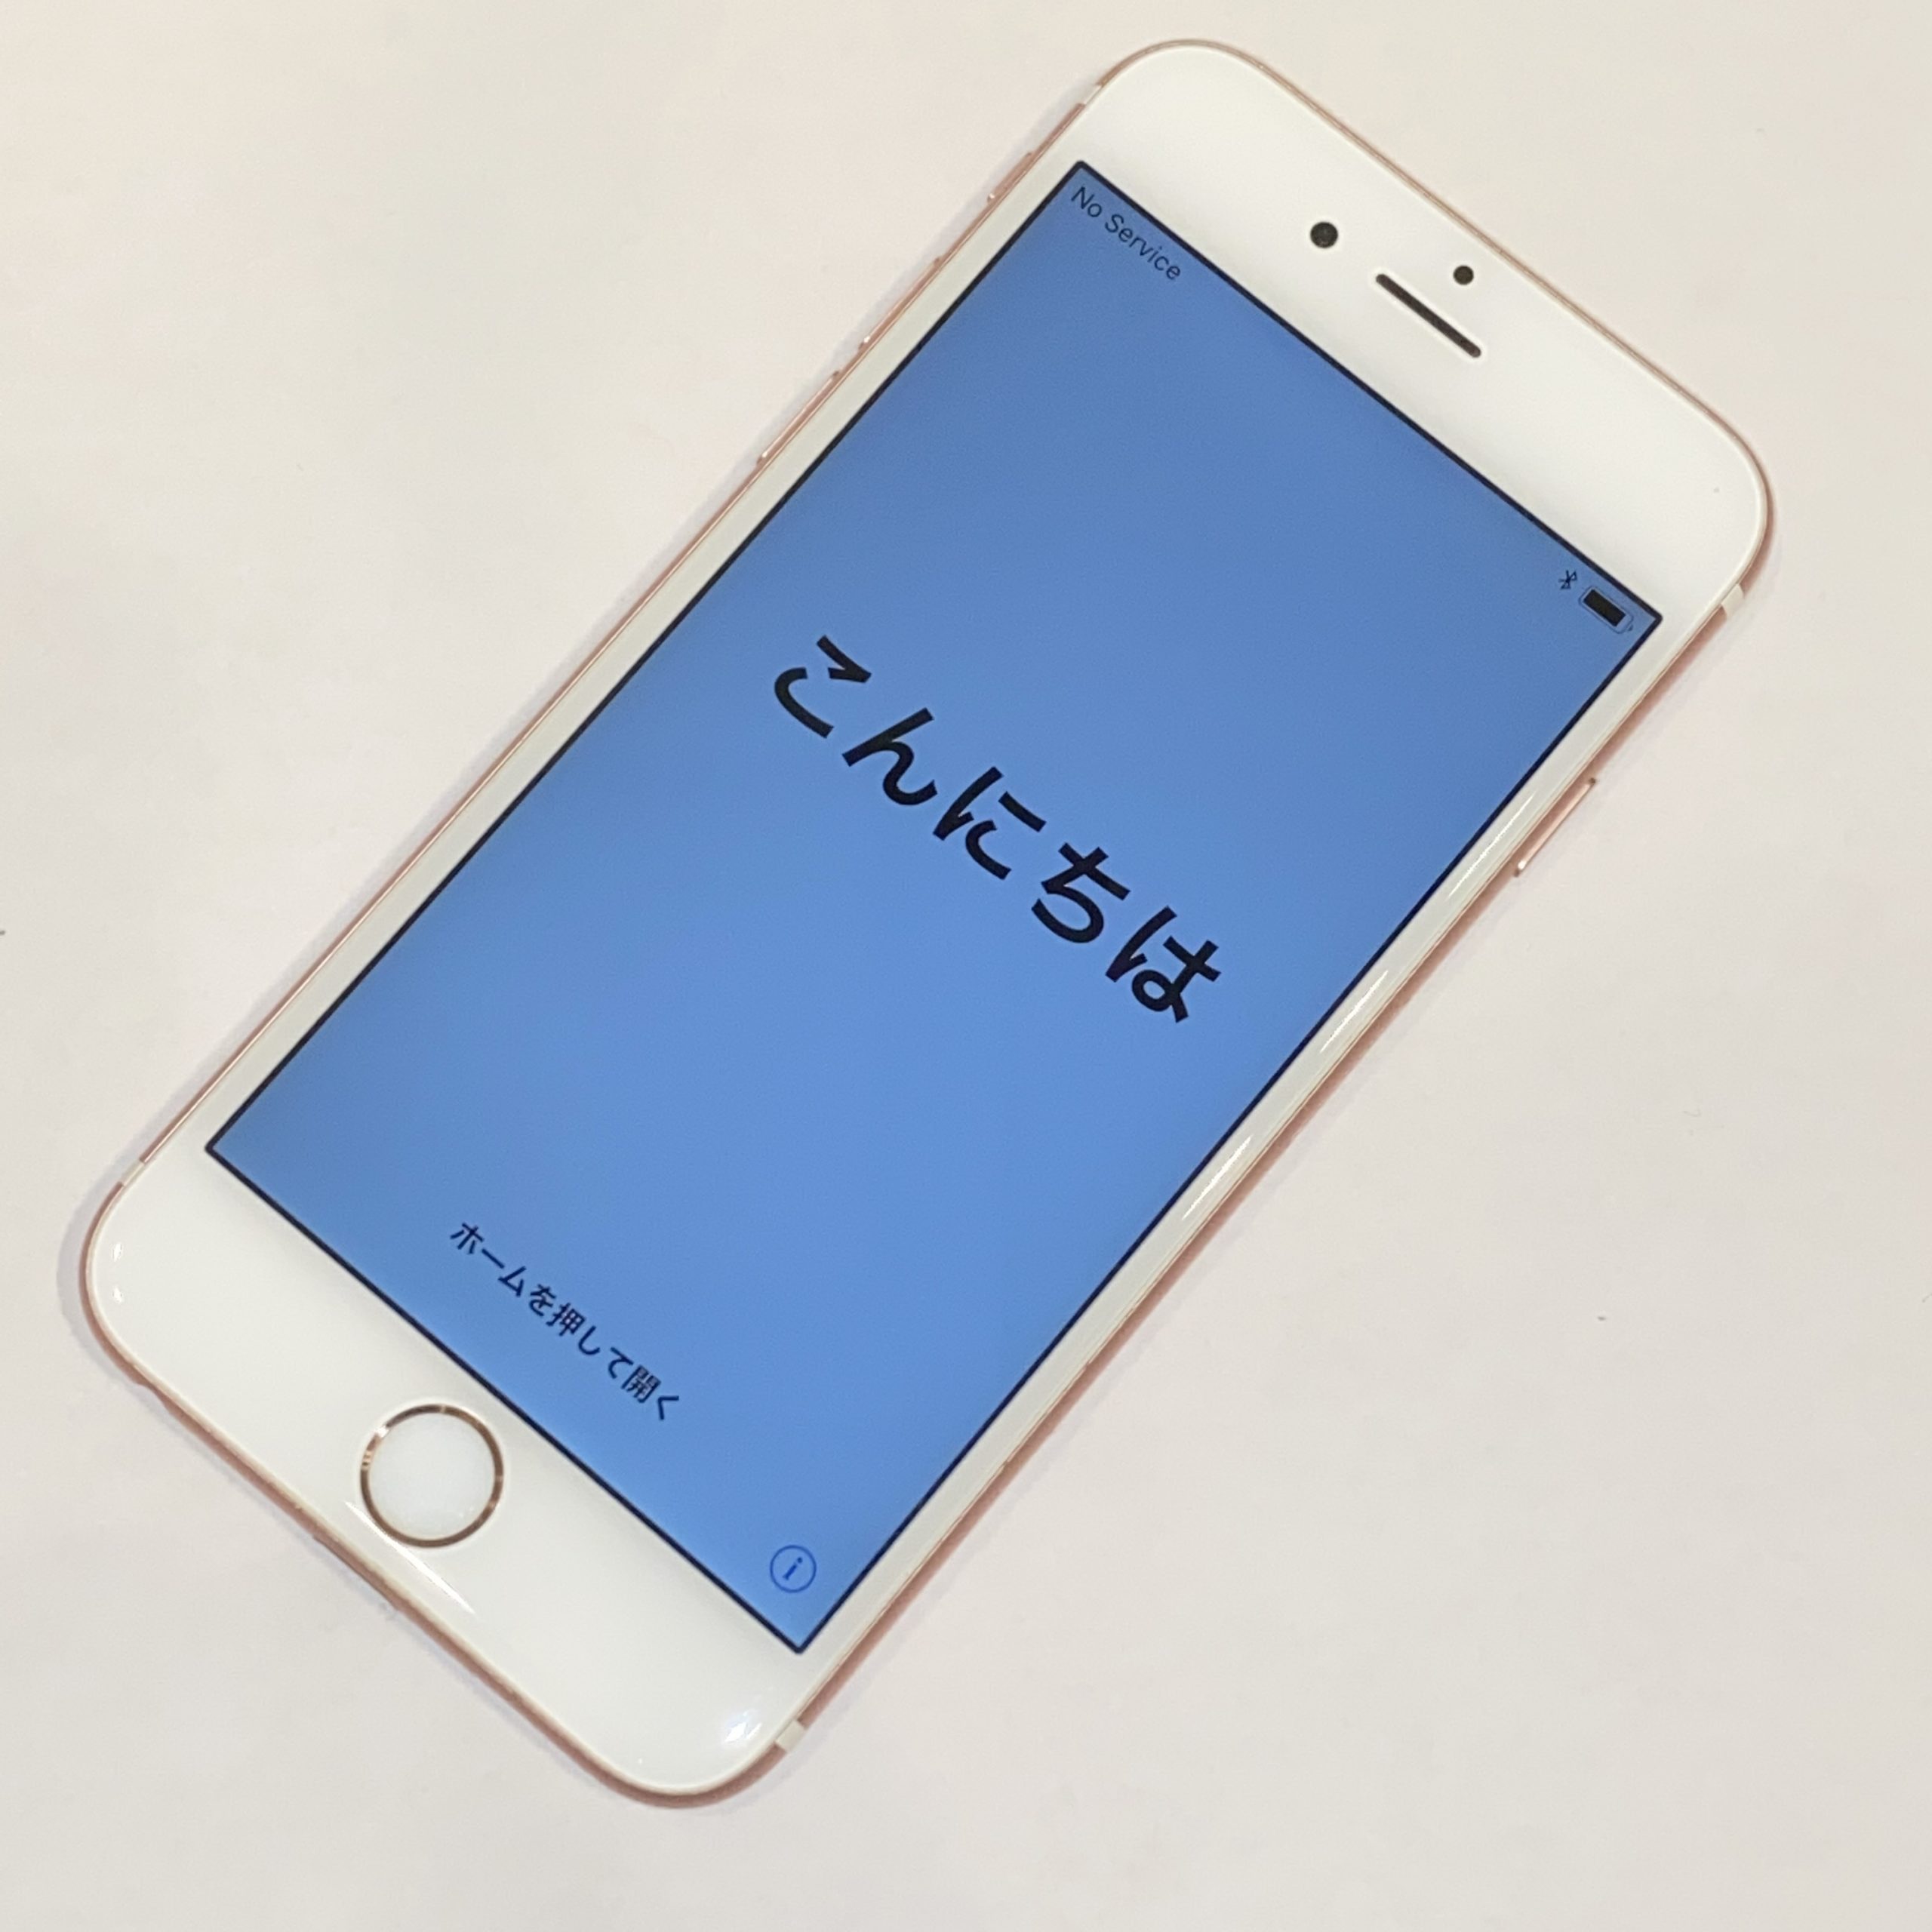 【Apple/アップル】iPhone6S MKQM2J/A/A1688 16GB ROSEGOLD/ローズゴールド